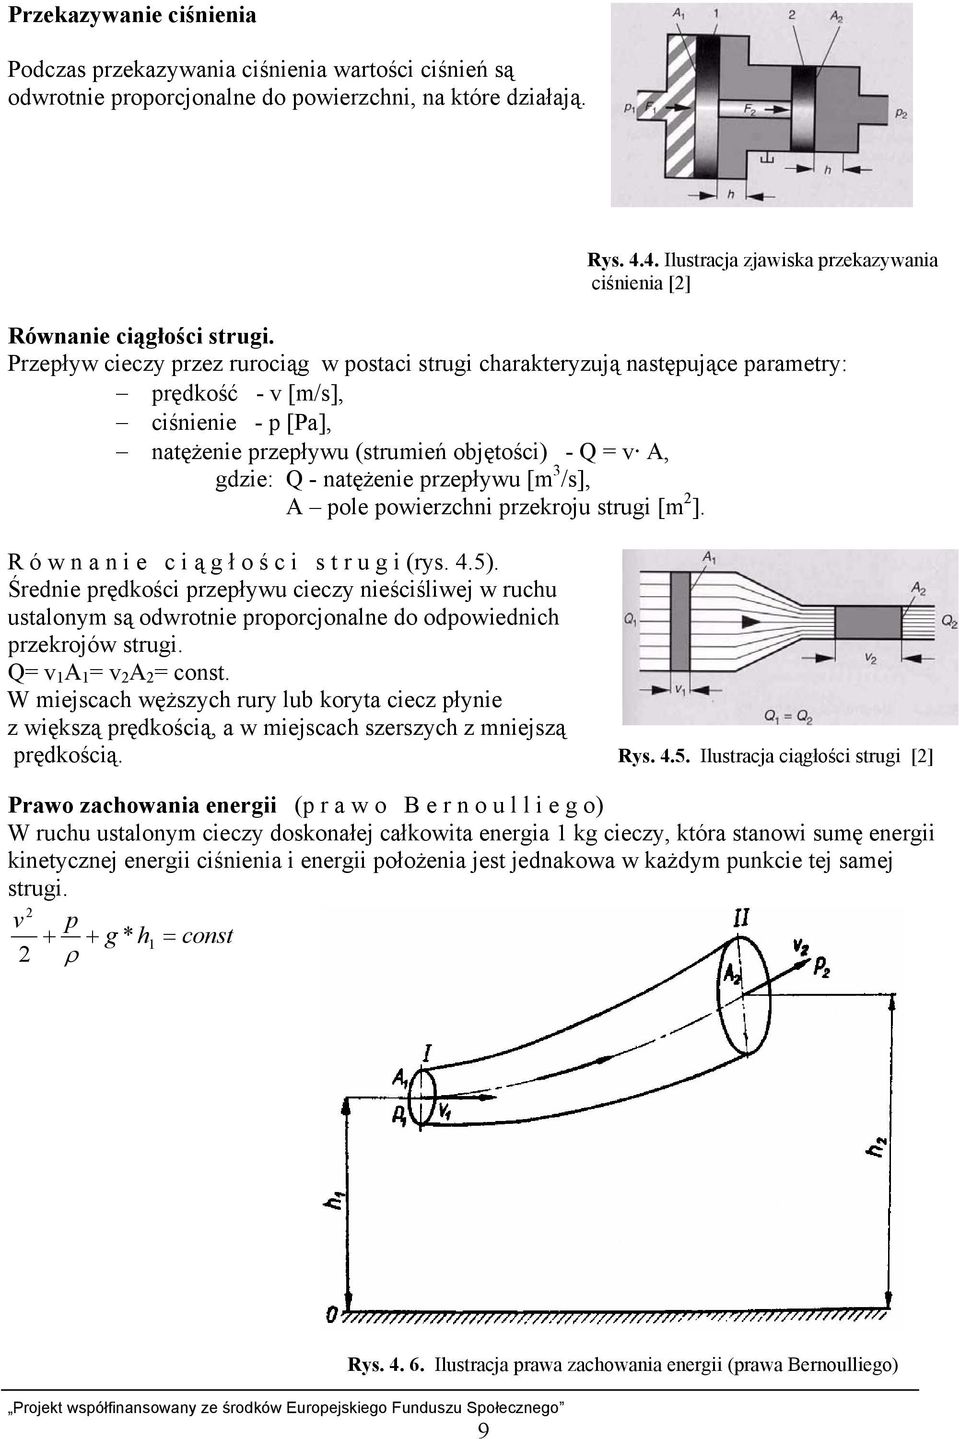 Przepływ cieczy przez rurociąg w postaci strugi charakteryzują następujące parametry: prędkość - v [m/s], ciśnienie - p [Pa], natężenie przepływu (strumień objętości) - Q = v A, gdzie: Q - natężenie